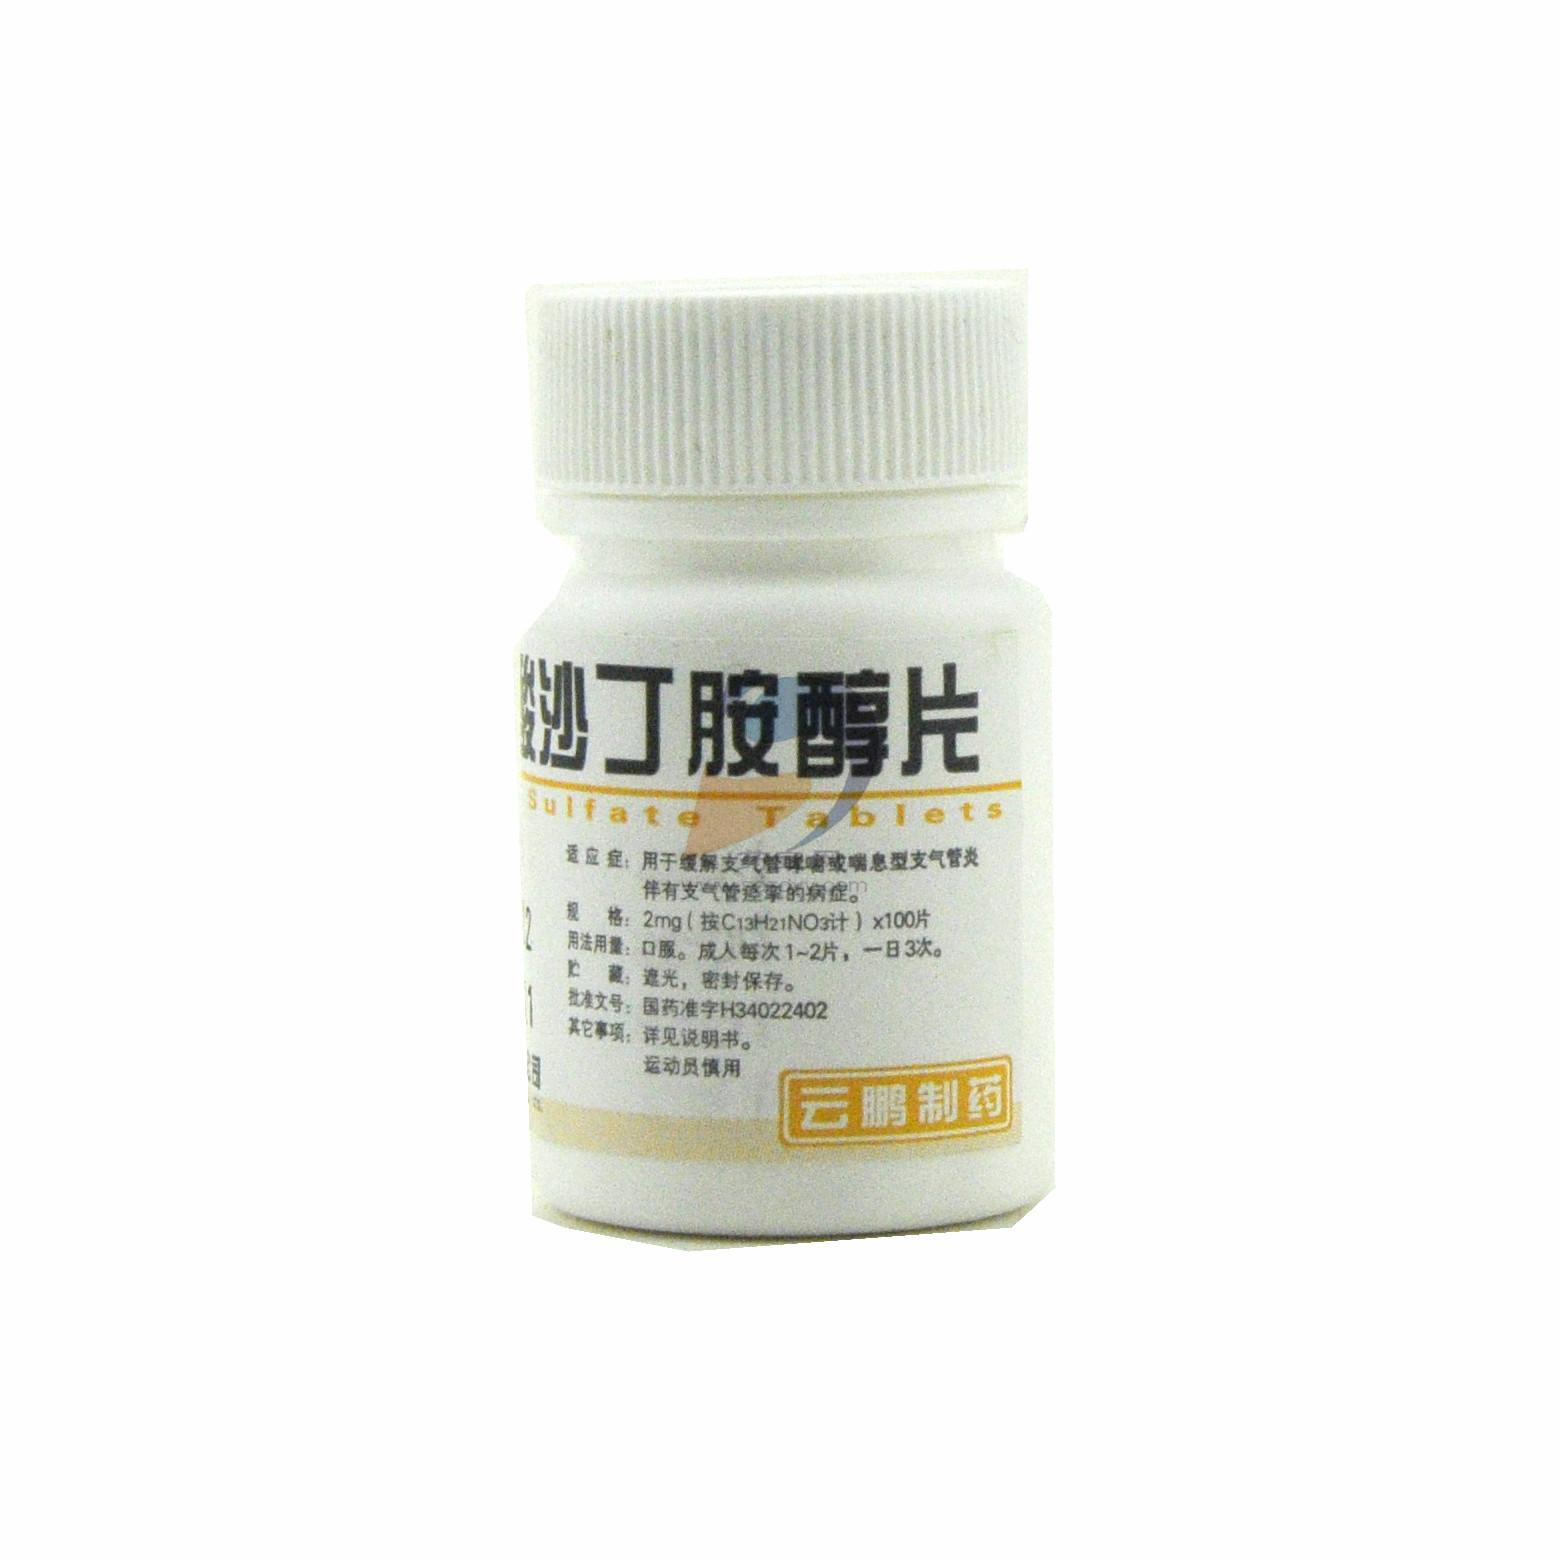 盐酸克伦特罗-莱克多巴胺-沙丁胺醇三联检测卡 - 杭州恒奥科技有限公司